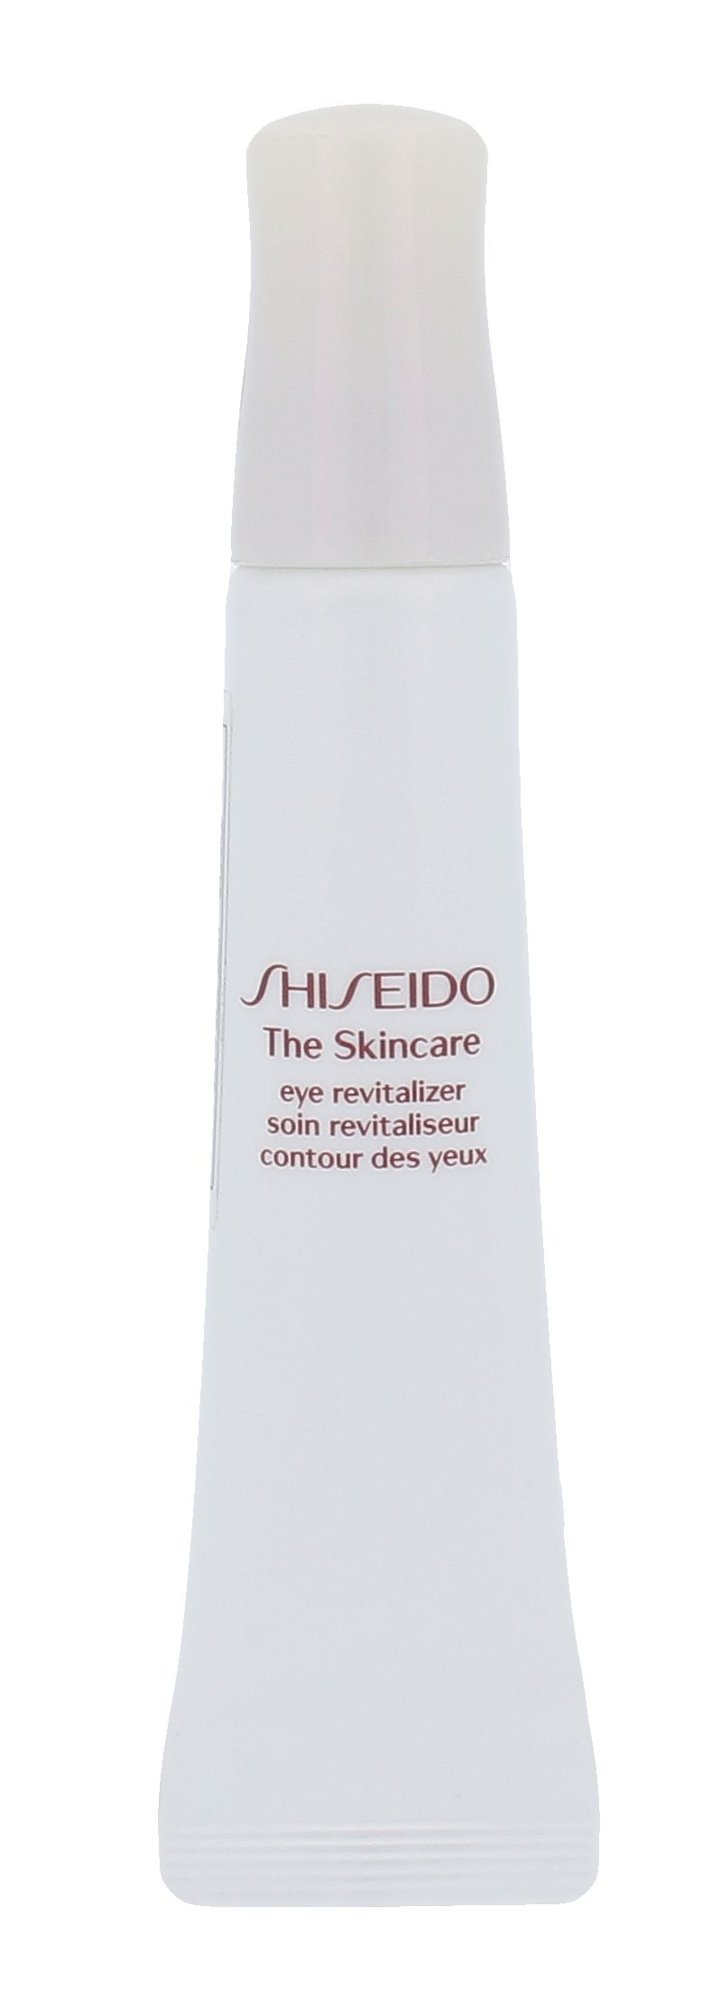 Shiseido The Skincare 15ml paakių kremas Testeris